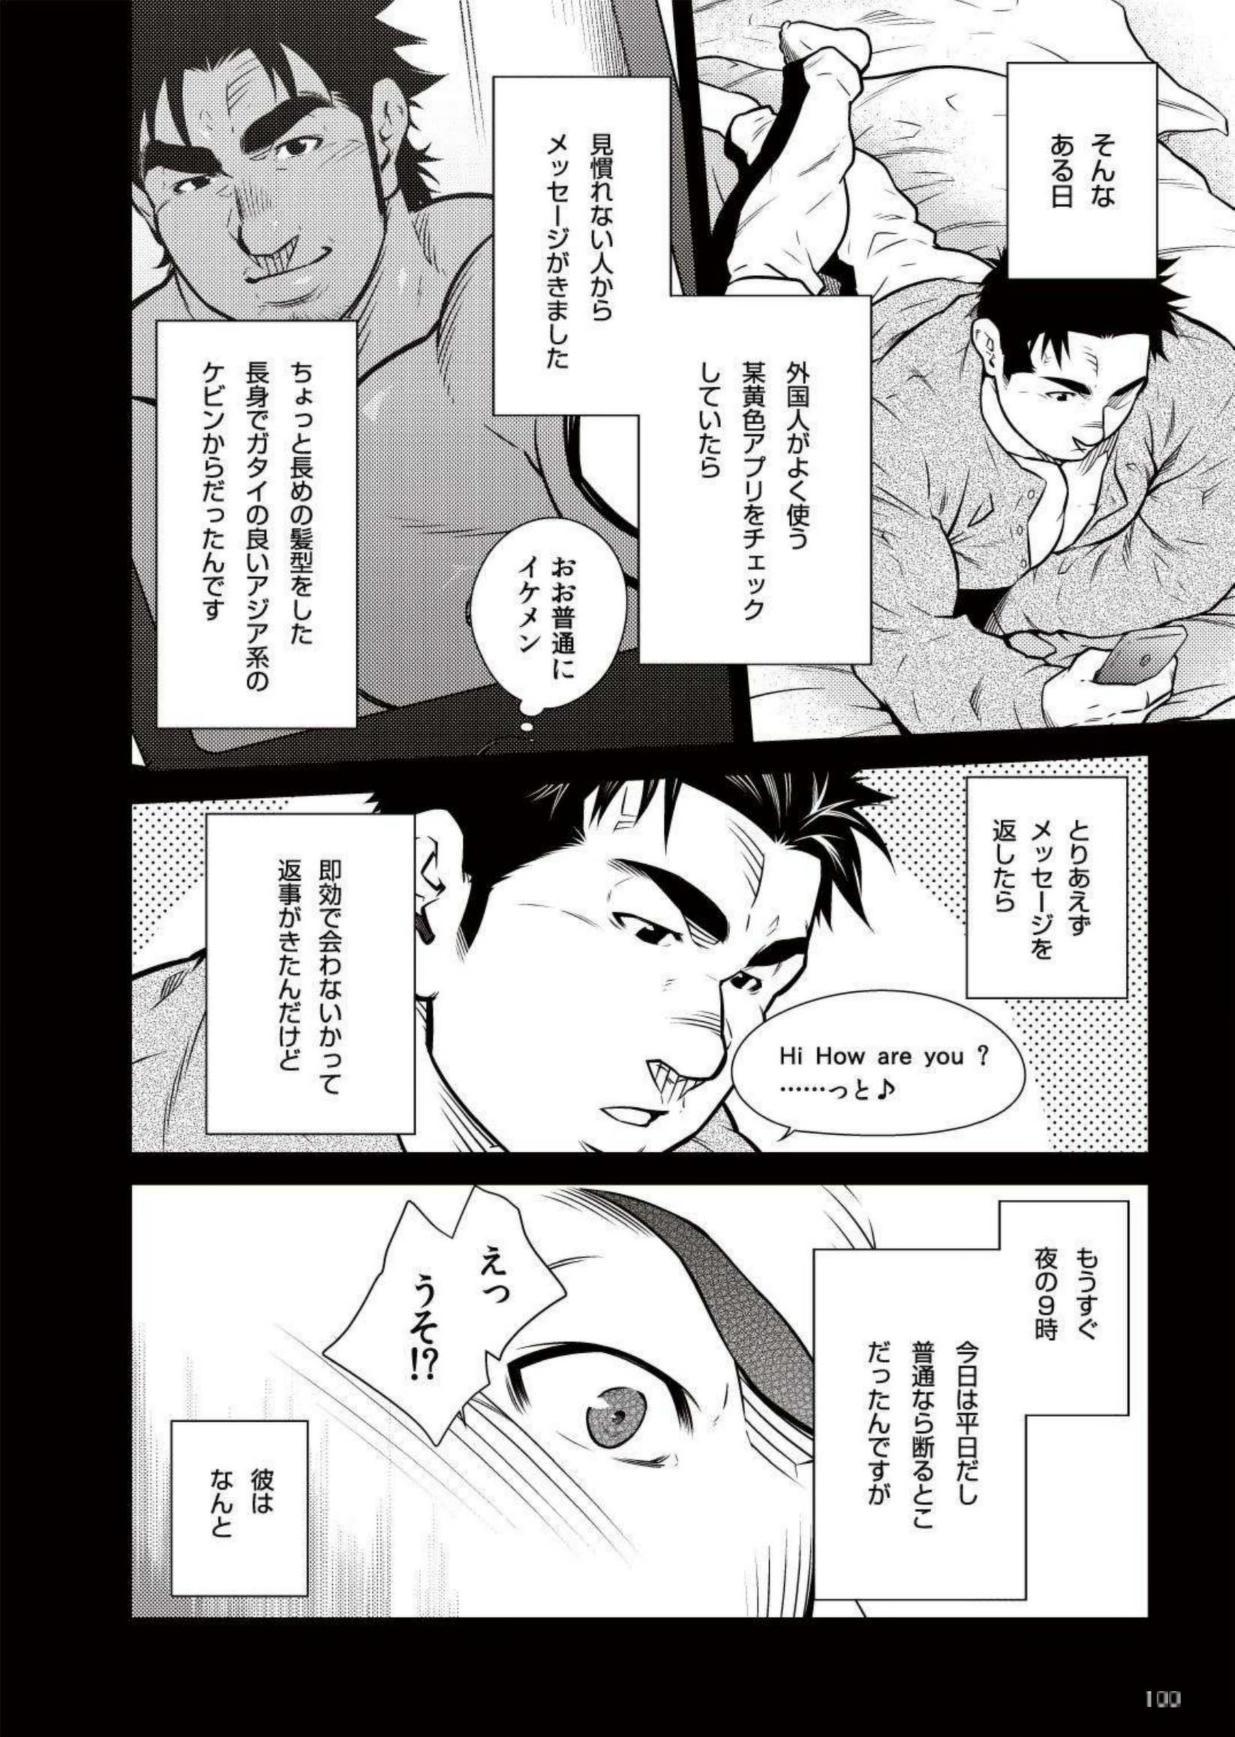 8teenxxx Terujirou - 晃次郎 - Badi Bʌ́di (バディ) 111 (May 2015) Ejaculations - Page 2